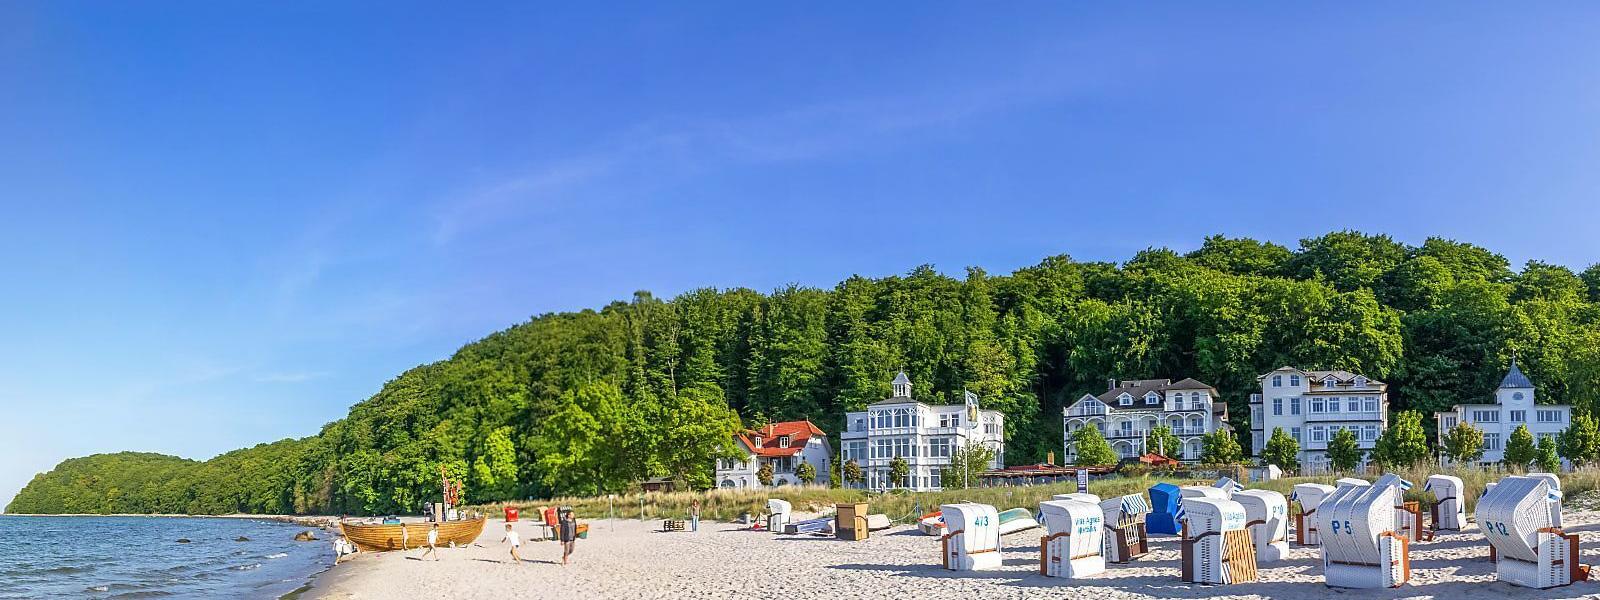 Ferienwohnungen und Ferienhäuser in Mecklenburg-Vorpommern - atraveo